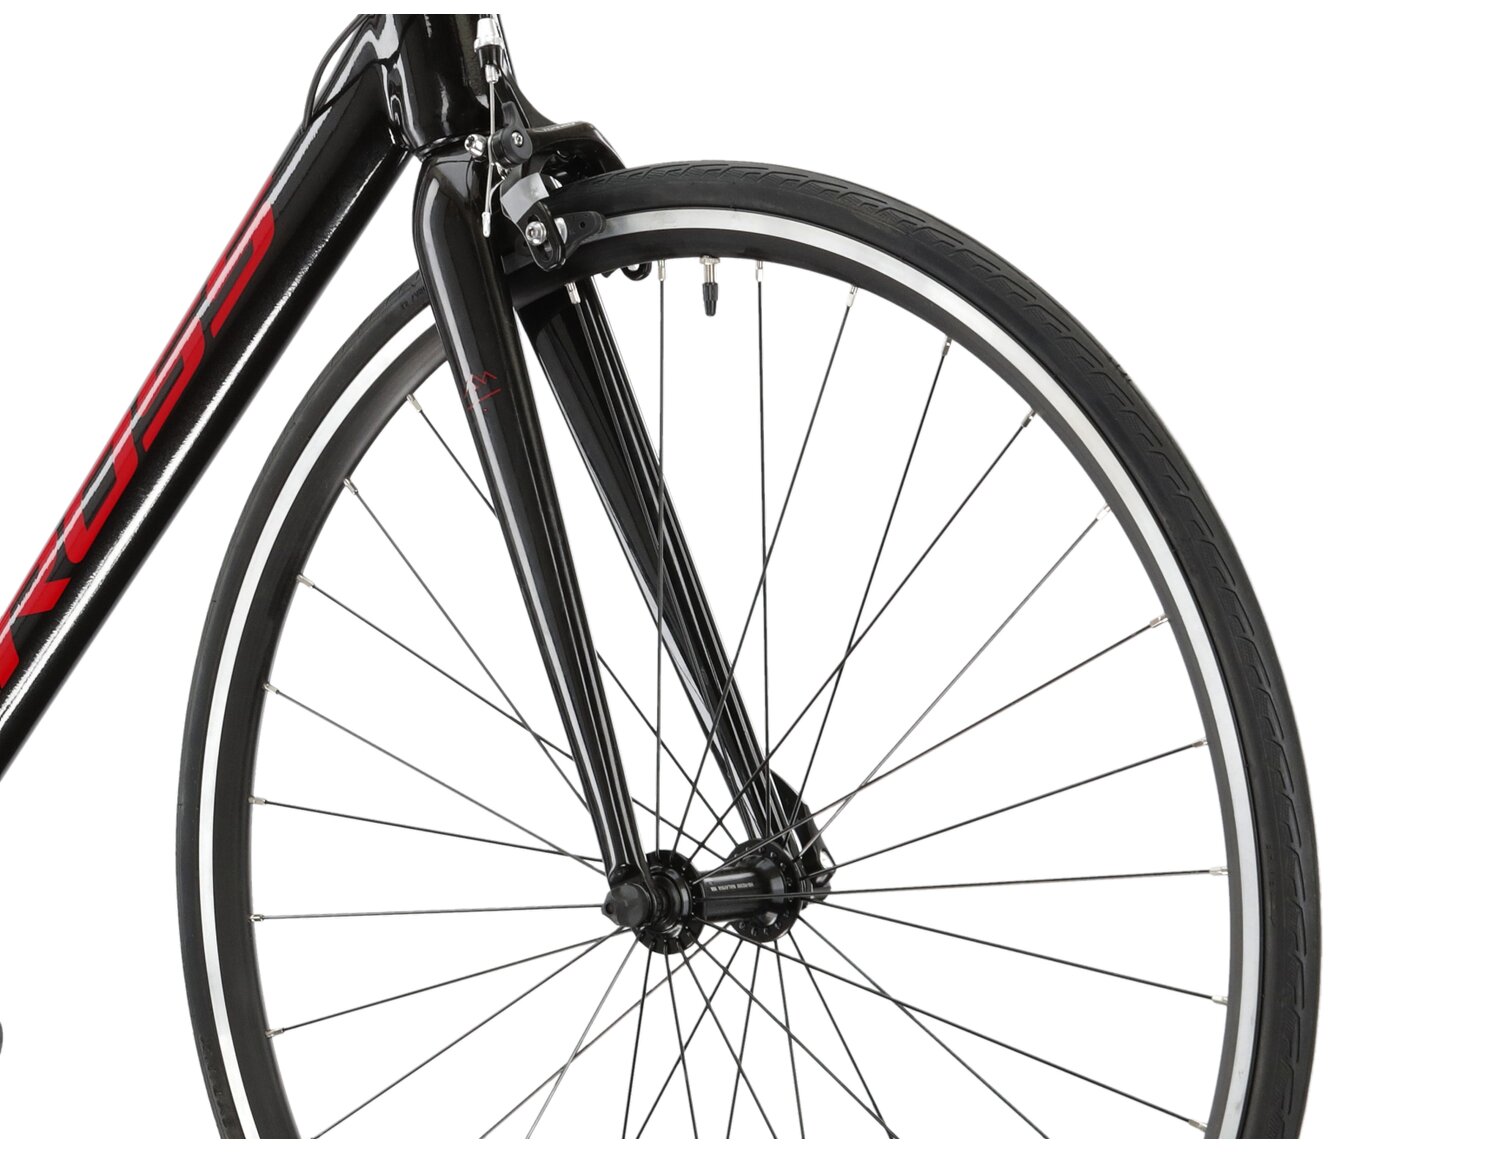  Aluminiowa rama, sztywny carbonowy widelec oraz opony Wanda w rowerze szosowym KROSS Vento 2.0 